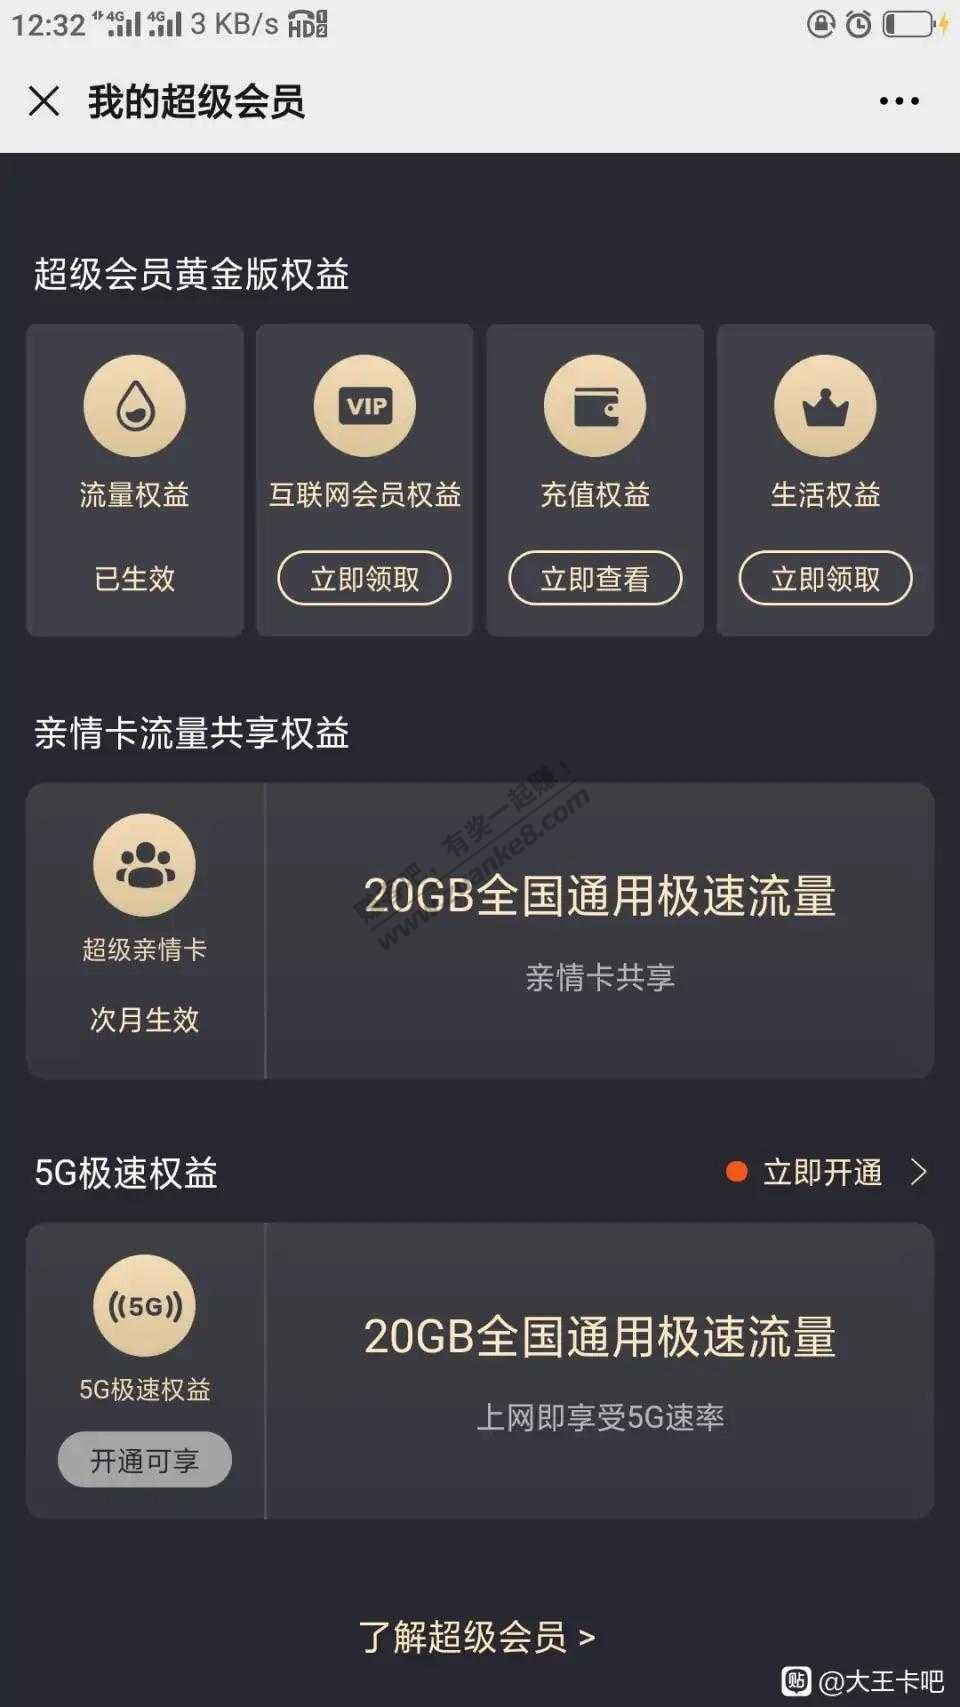 王卡4g版超会黄金会员20g流量可以共享副卡了！-惠小助(52huixz.com)